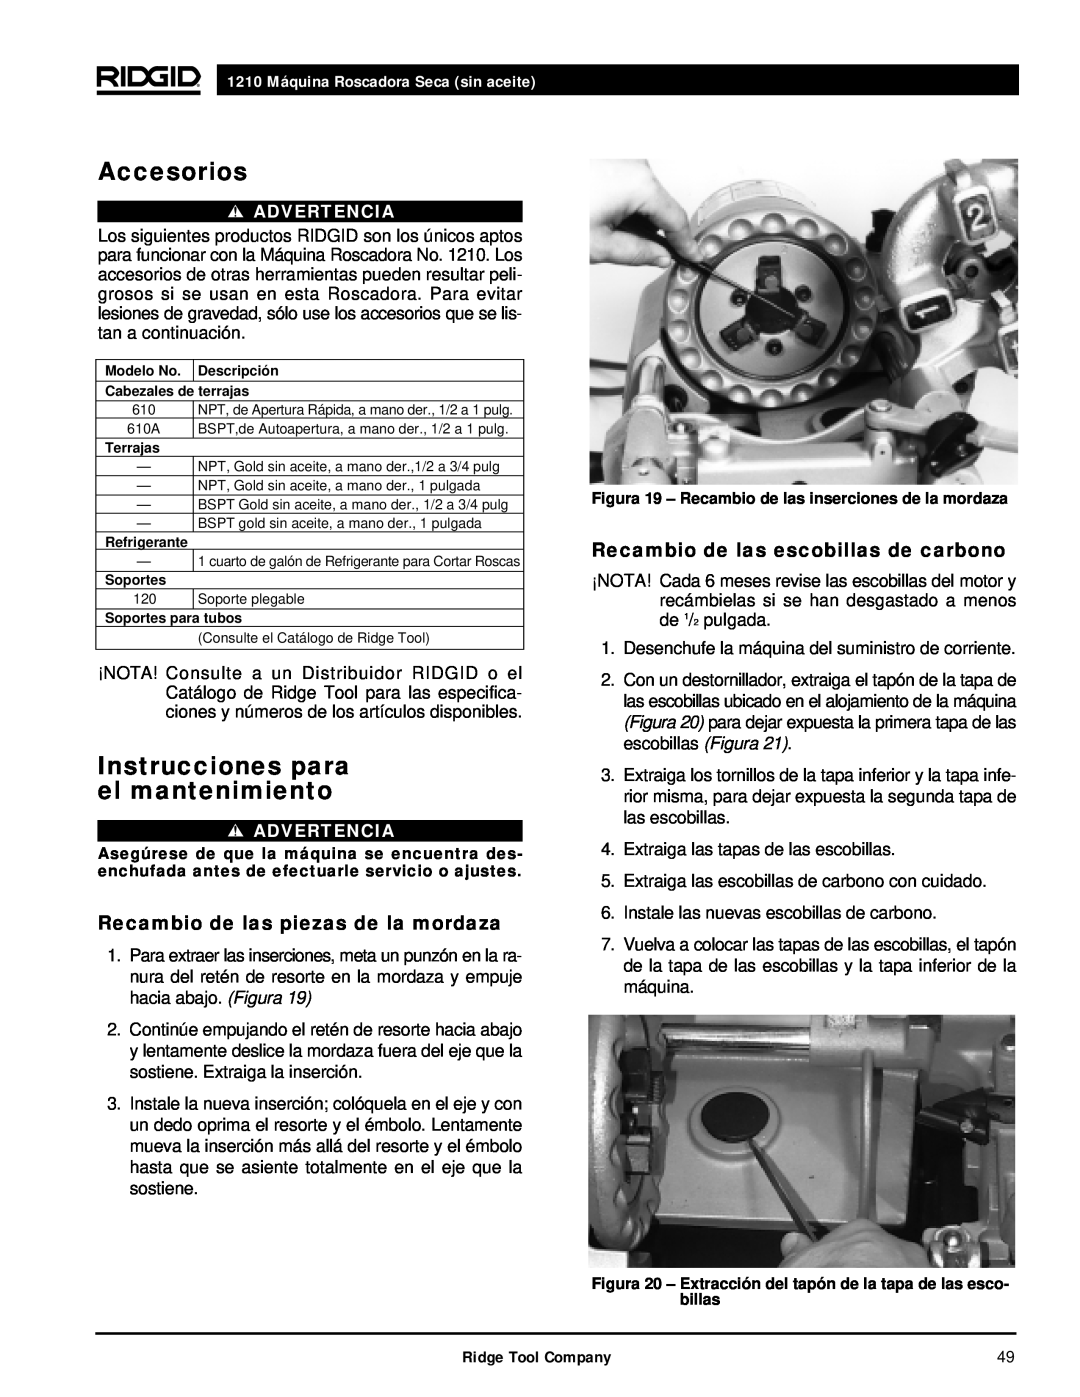 RIDGID 1210 manual Accesorios, Instrucciones para el mantenimiento, Recambio de las piezas de la mordaza, Advertencia 